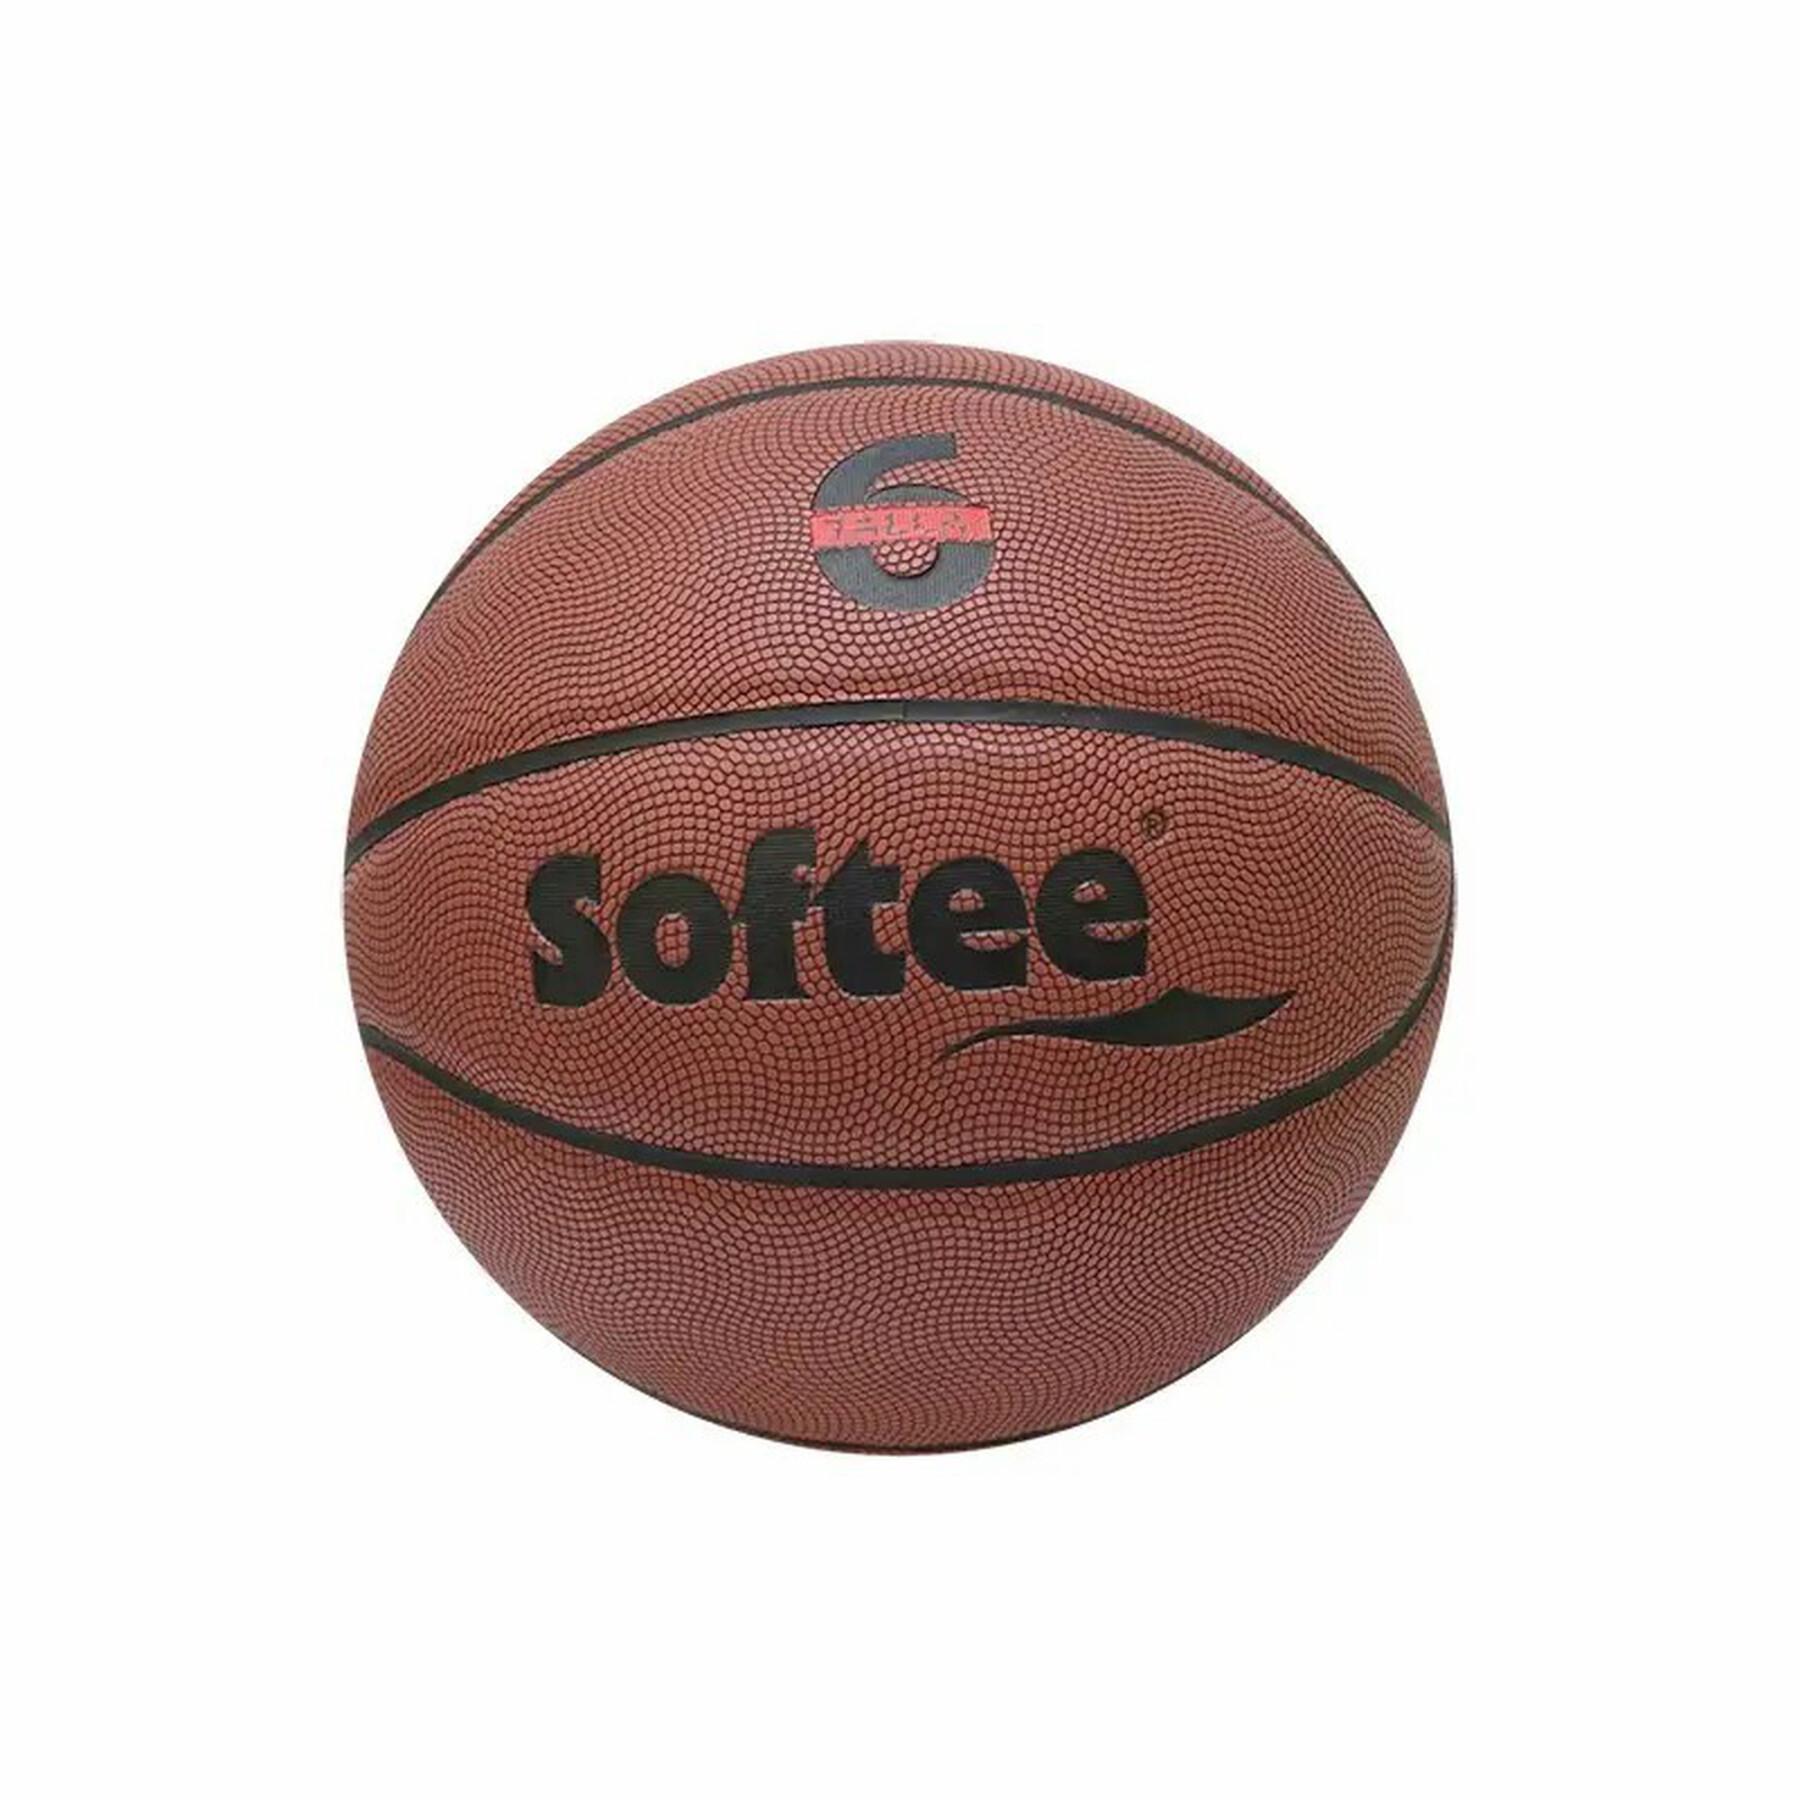 Ballon Softee 7